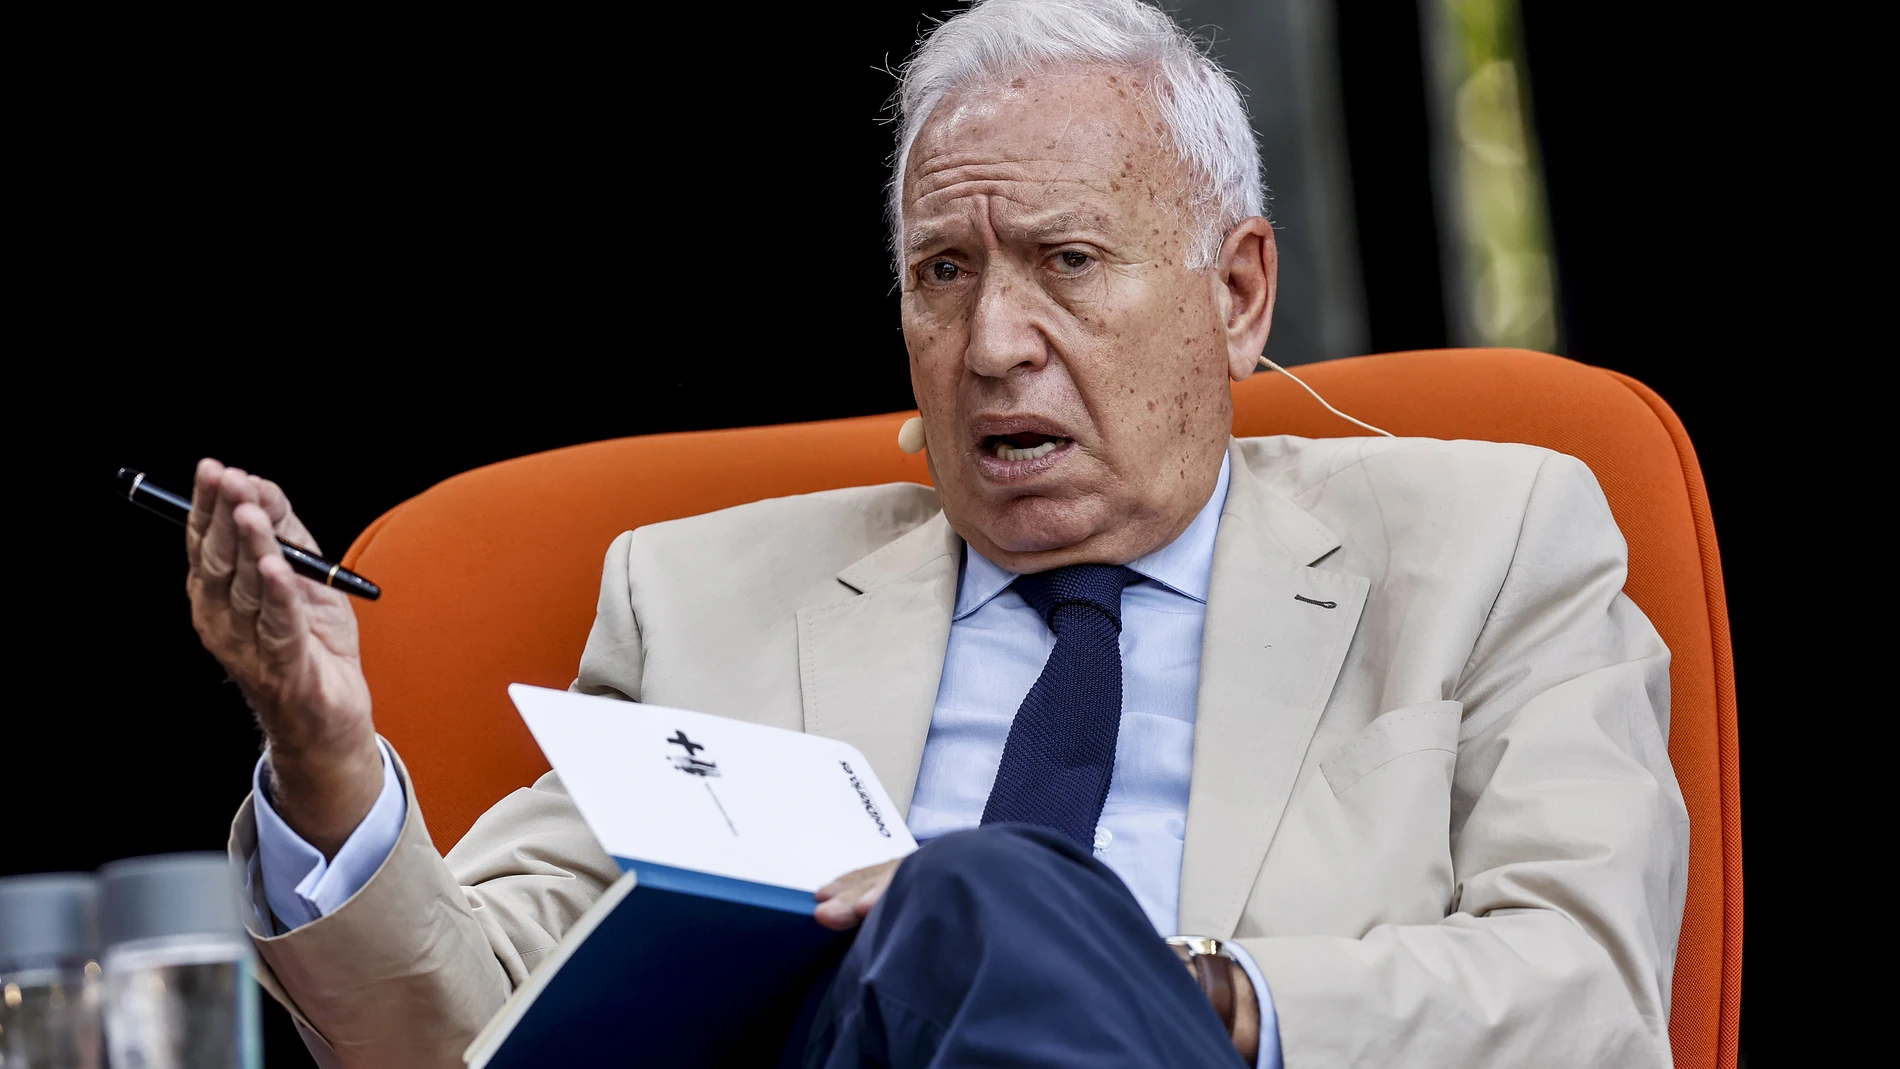 El exministro Margallo avisa que reconocer a Kosovo sentaría un precedente "muy grave" con Cataluña